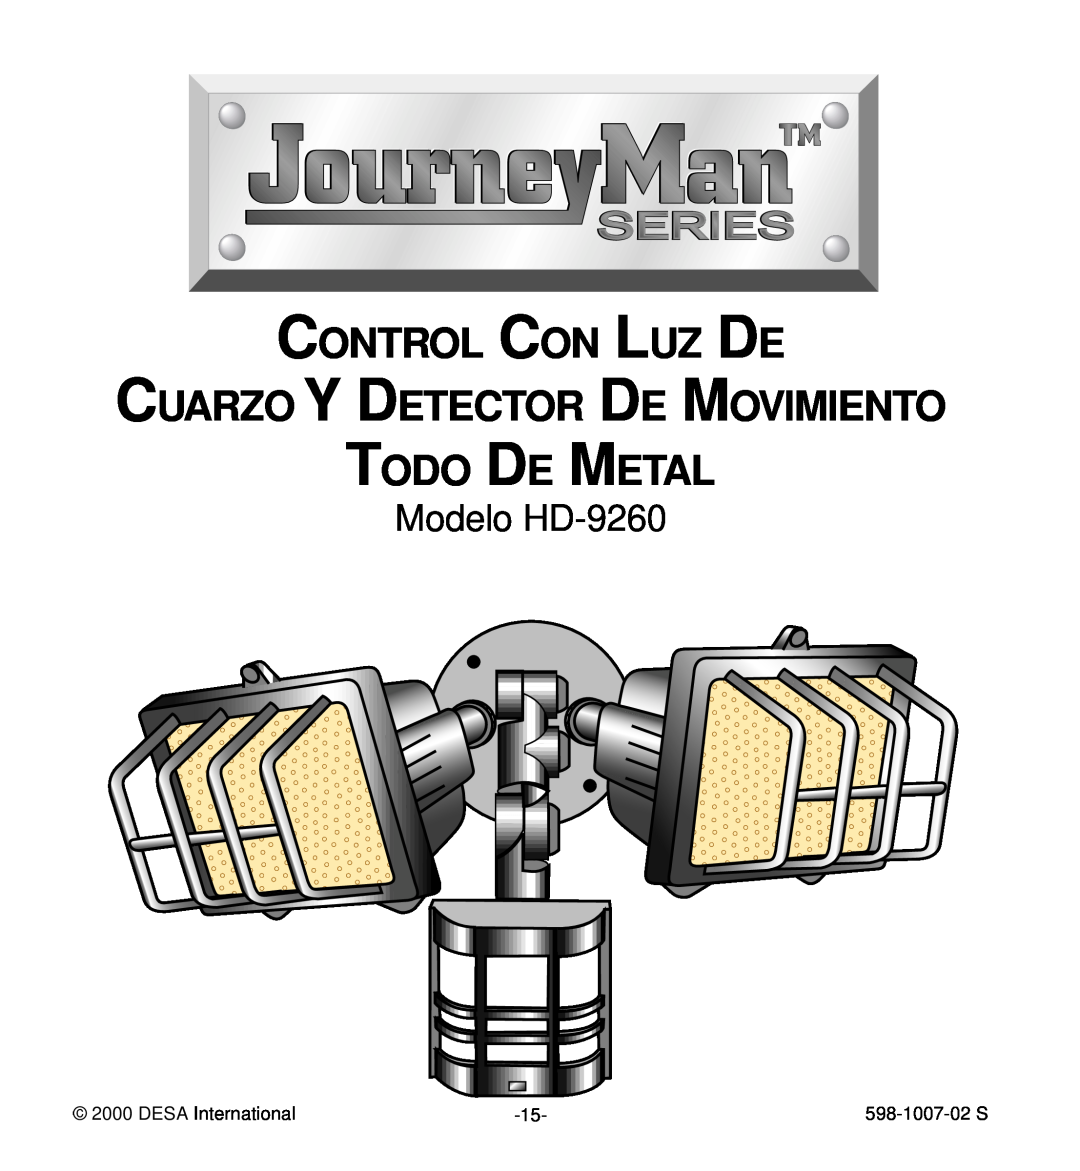 Desa manual Modelo HD-9260, Control Con Luz De, Cuarzo Y Detector De Movimiento Todo De Metal, DESA International 